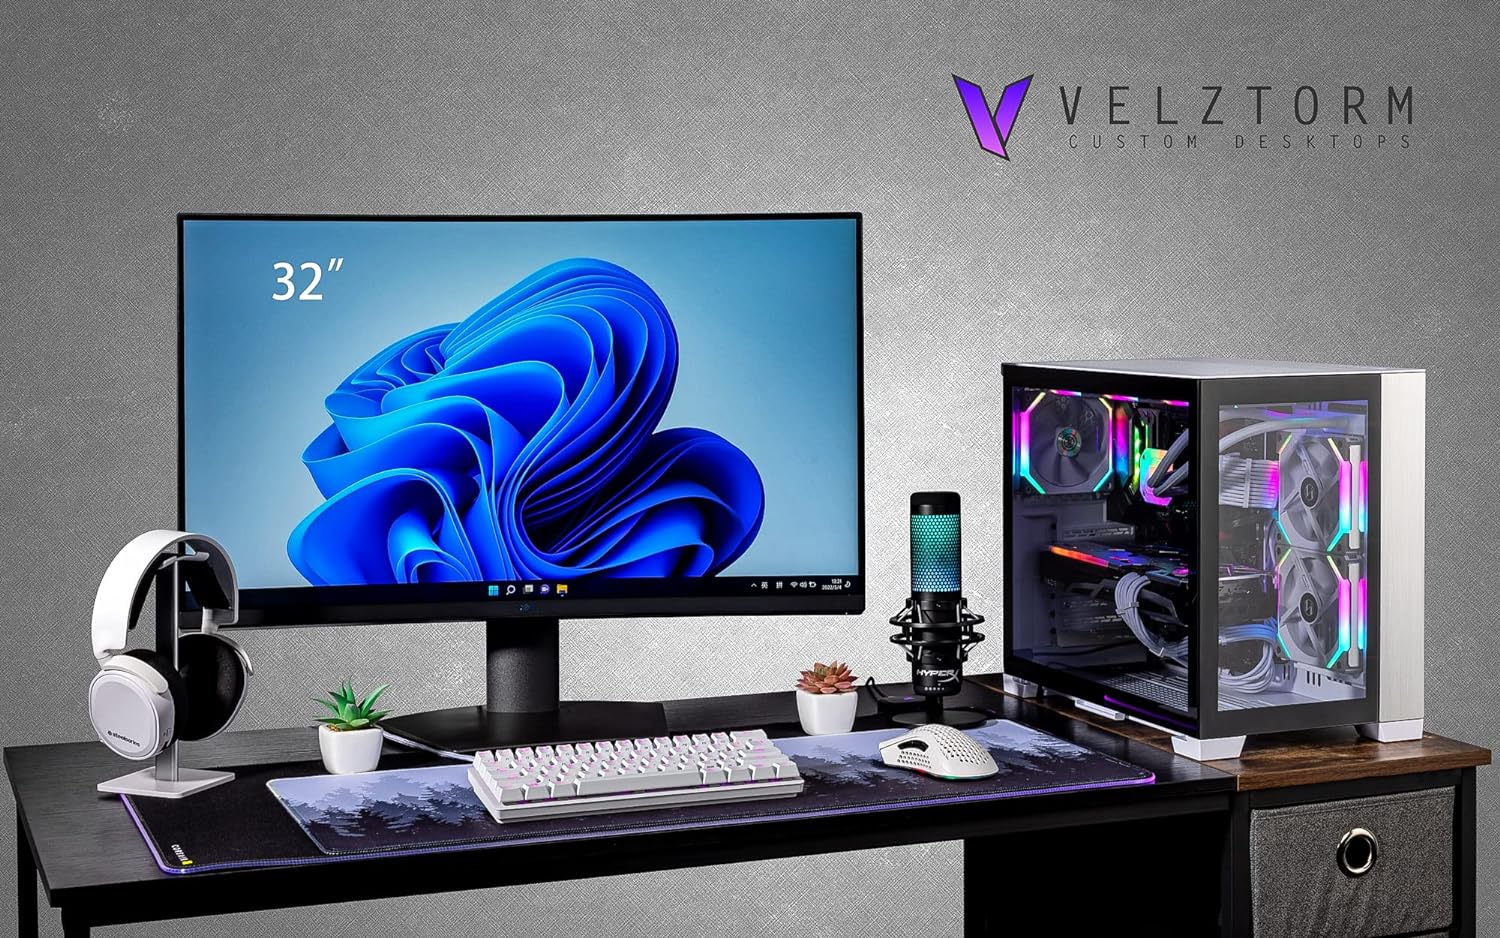 Velztorm Mini Lux Gaming Desktop PC (AMD Ryzen 9 5950X 16-Core, Radeon RX 7900 XTX, 128GB RAM, 2TB PCIe SSD + 6TB HDD (3.5), WiFi, USB 3.2, HDMI, Display Port, Win 10 Home)